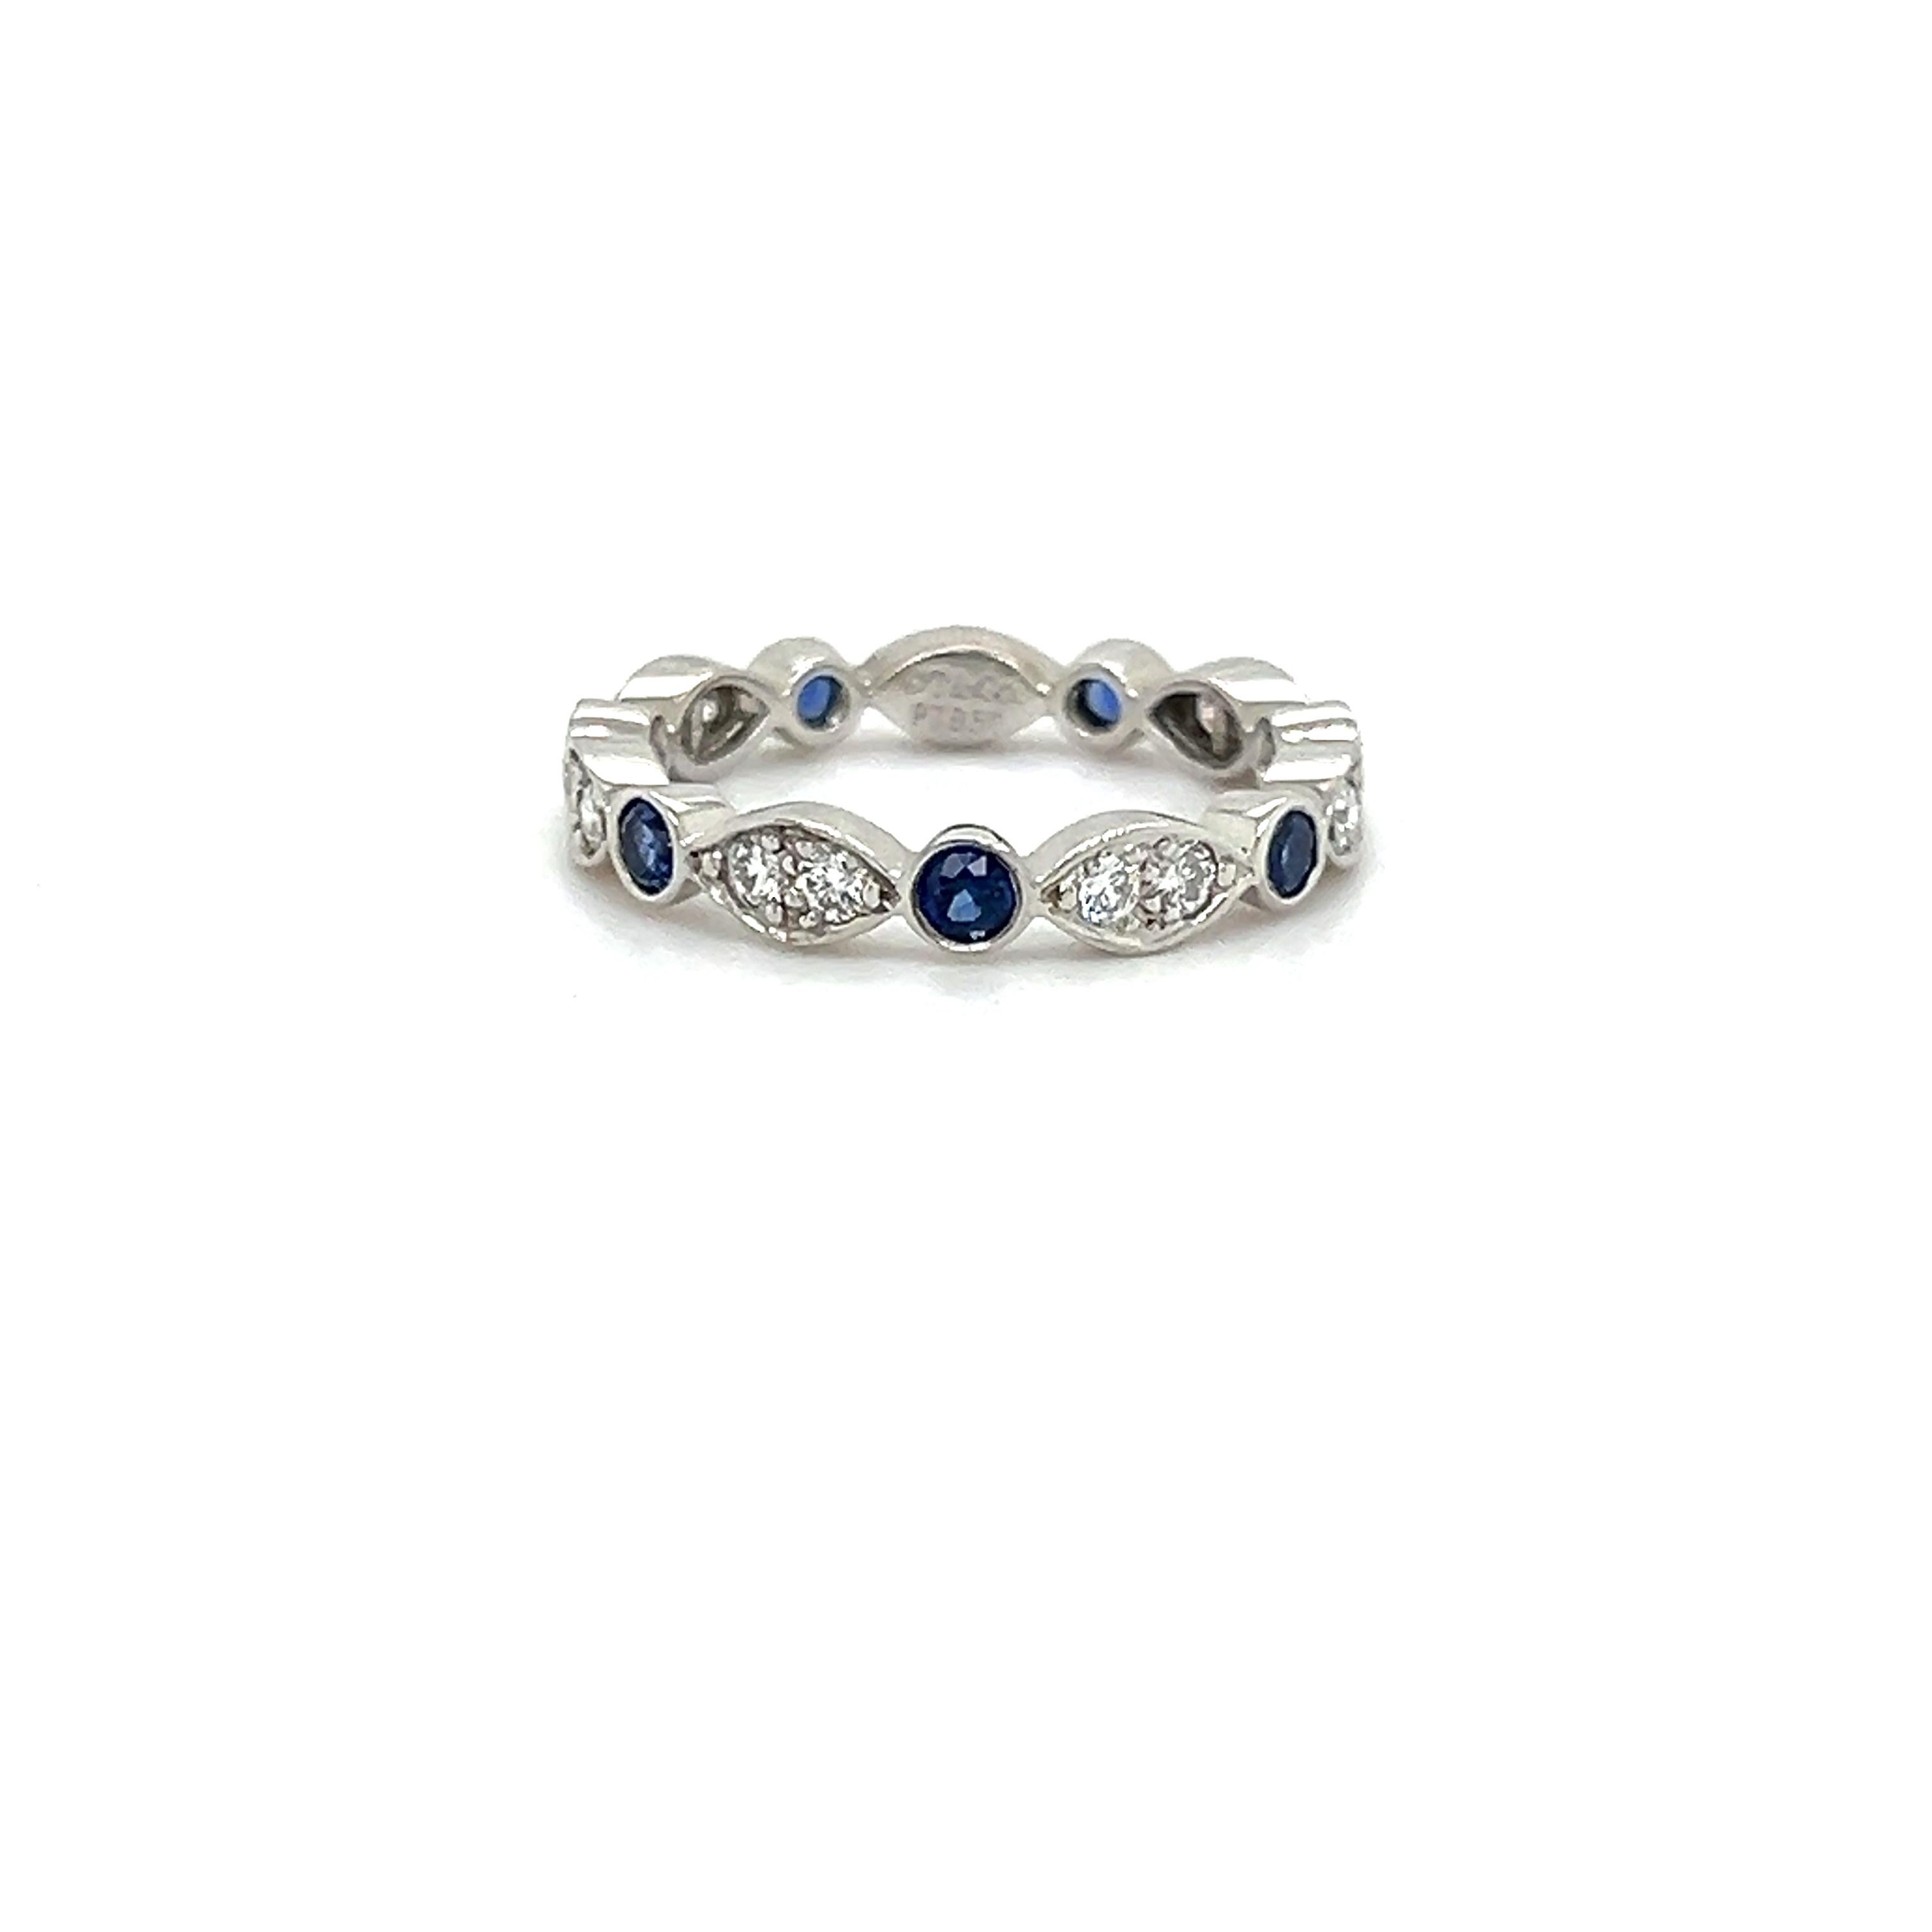 Wunderschöner Ring des berühmten Designers Tiffany & Co. Dieser elegante Ring ist aus Platin gefertigt und zeigt Diamanten und blaue Saphire, die in Marquise und Runde gefasst sind.  Formen mit Lünette. Der Ring stammt aus der 